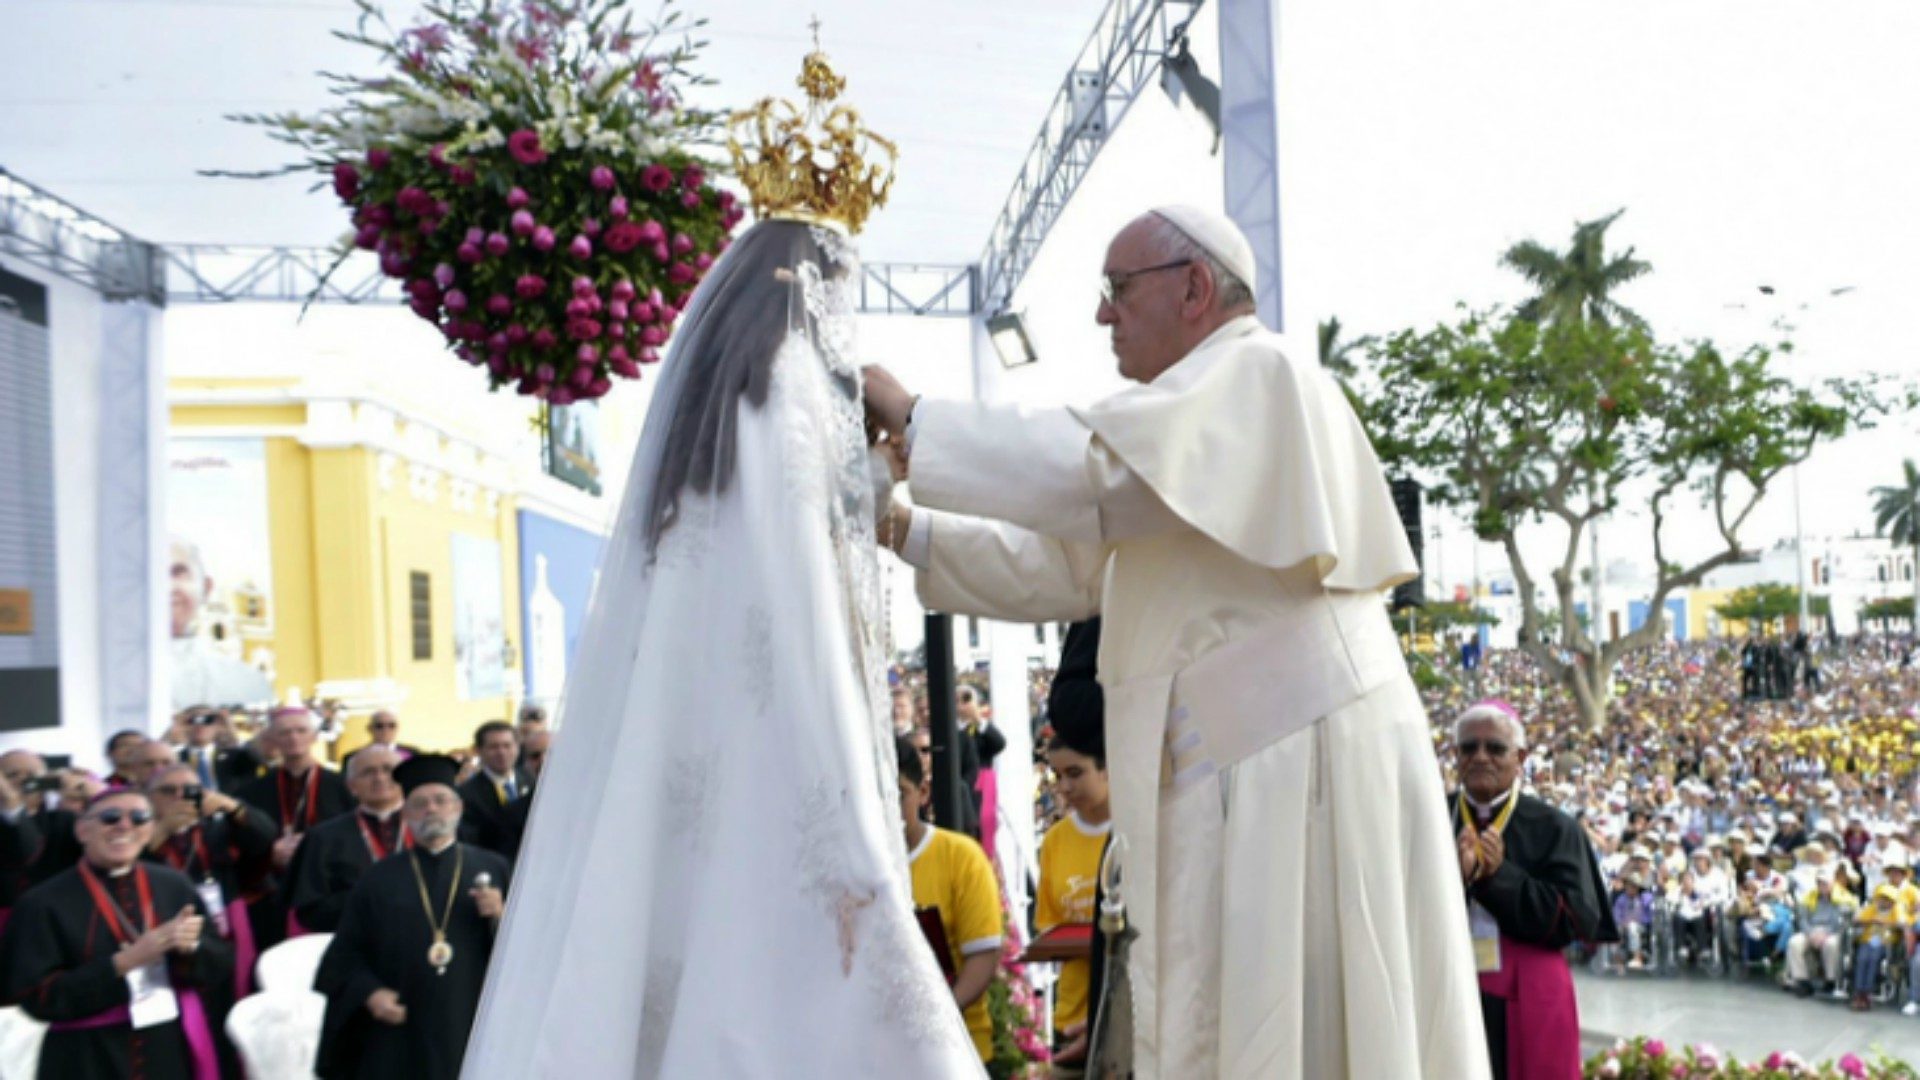 A Trujillo, le pape François a couronné la Vierge de la Porte | © AP L'Osservatore Romano/ Keystone